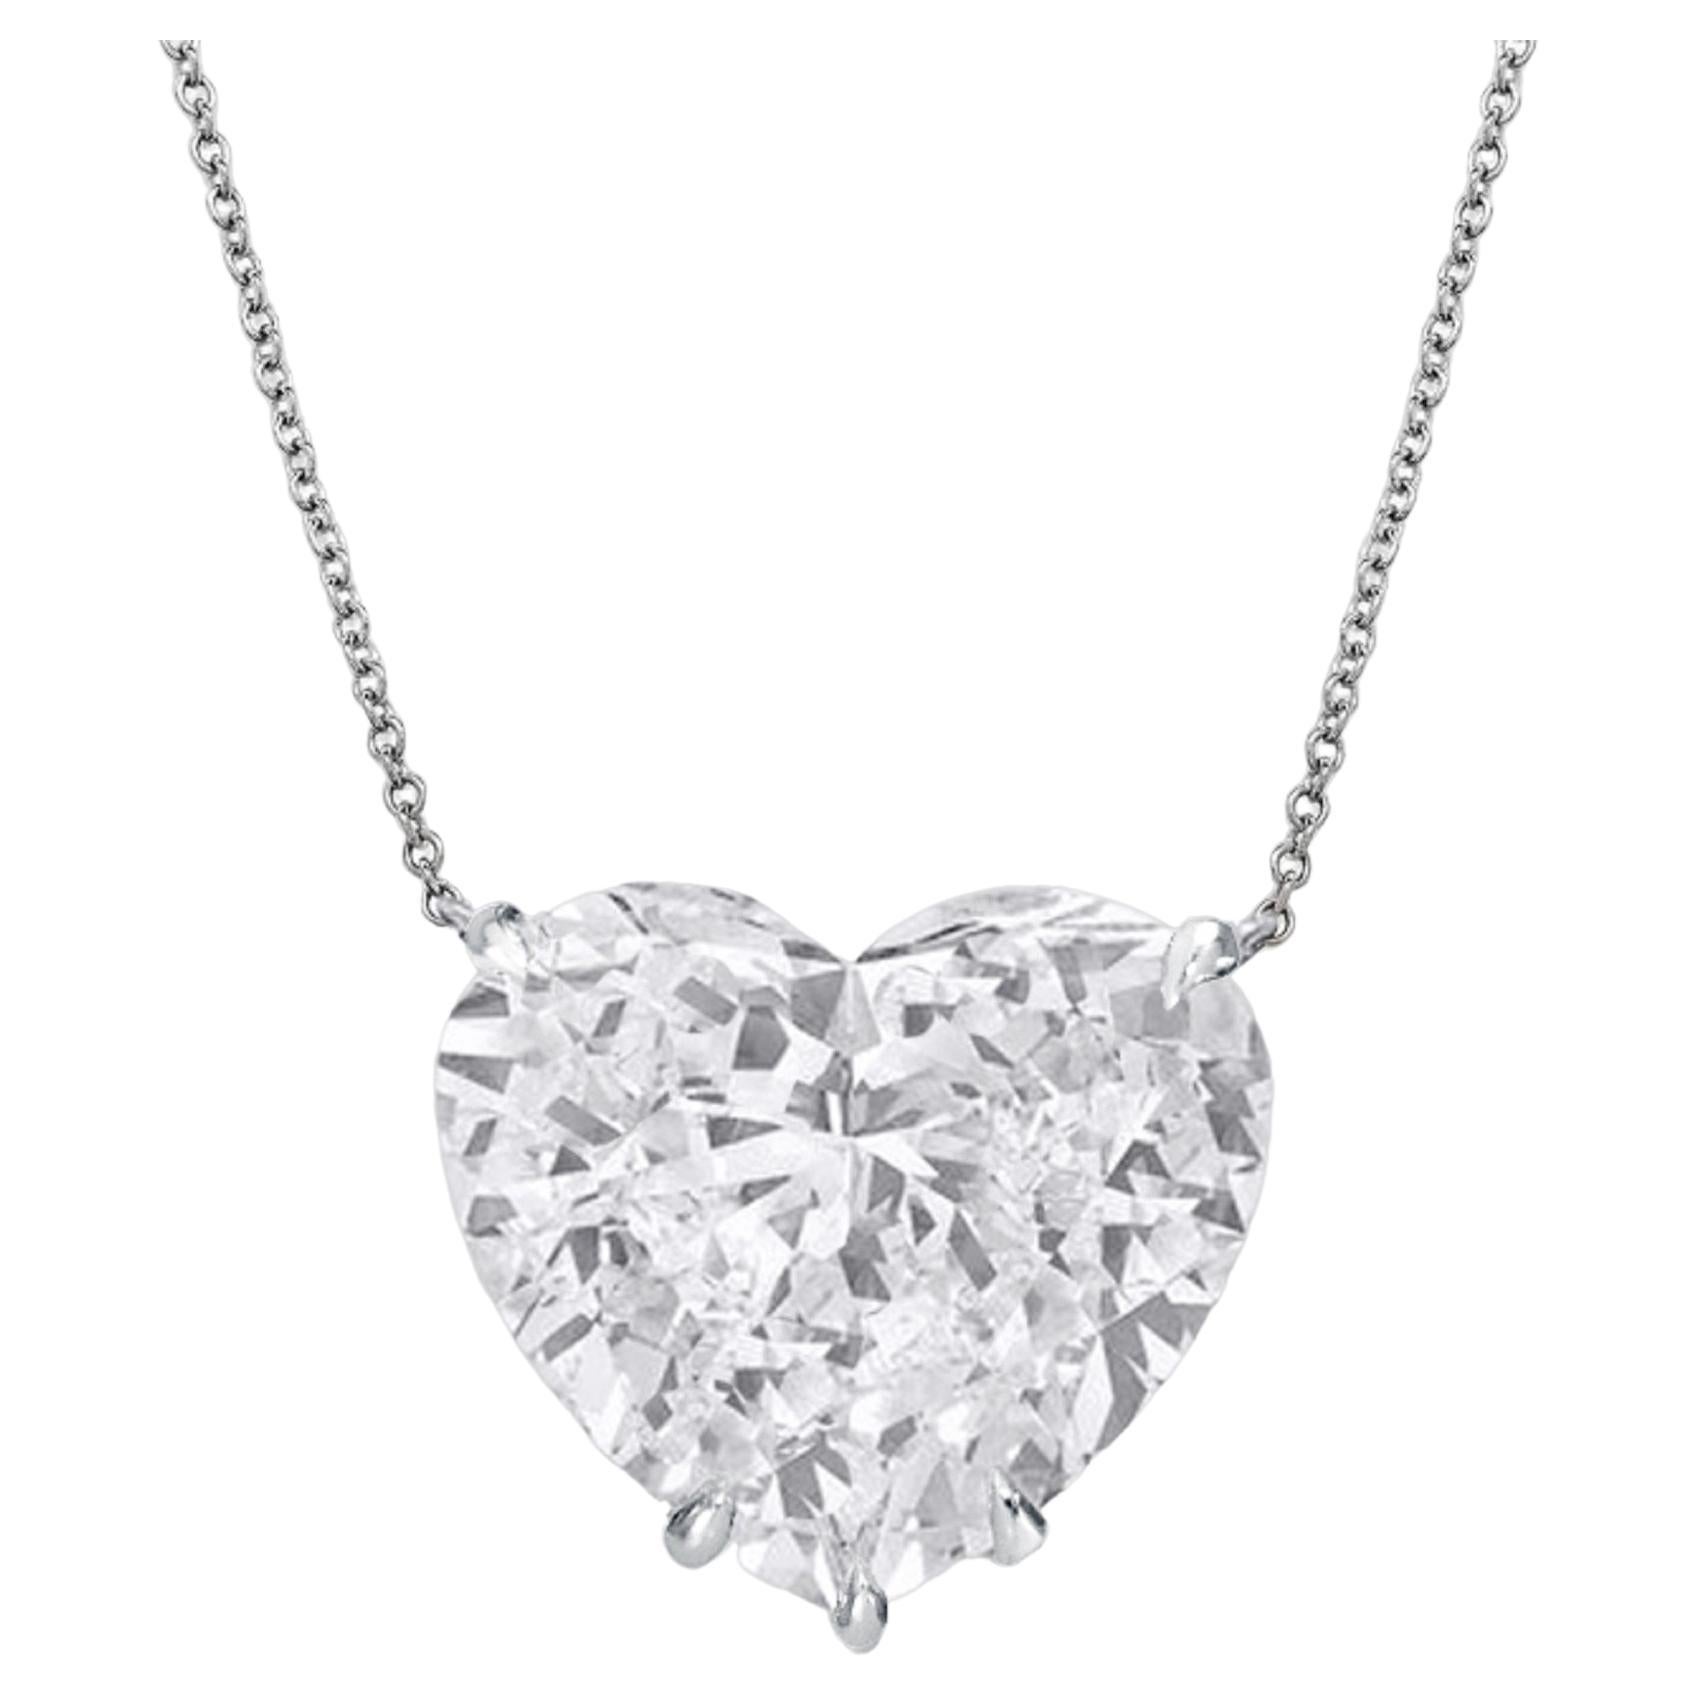 GIA Certified 4 Carat Heart Shape Diamond Platinum Necklace (collier en platine)
F COLOR
VVS2
QUALITÉ D'INVESTISSEMENT